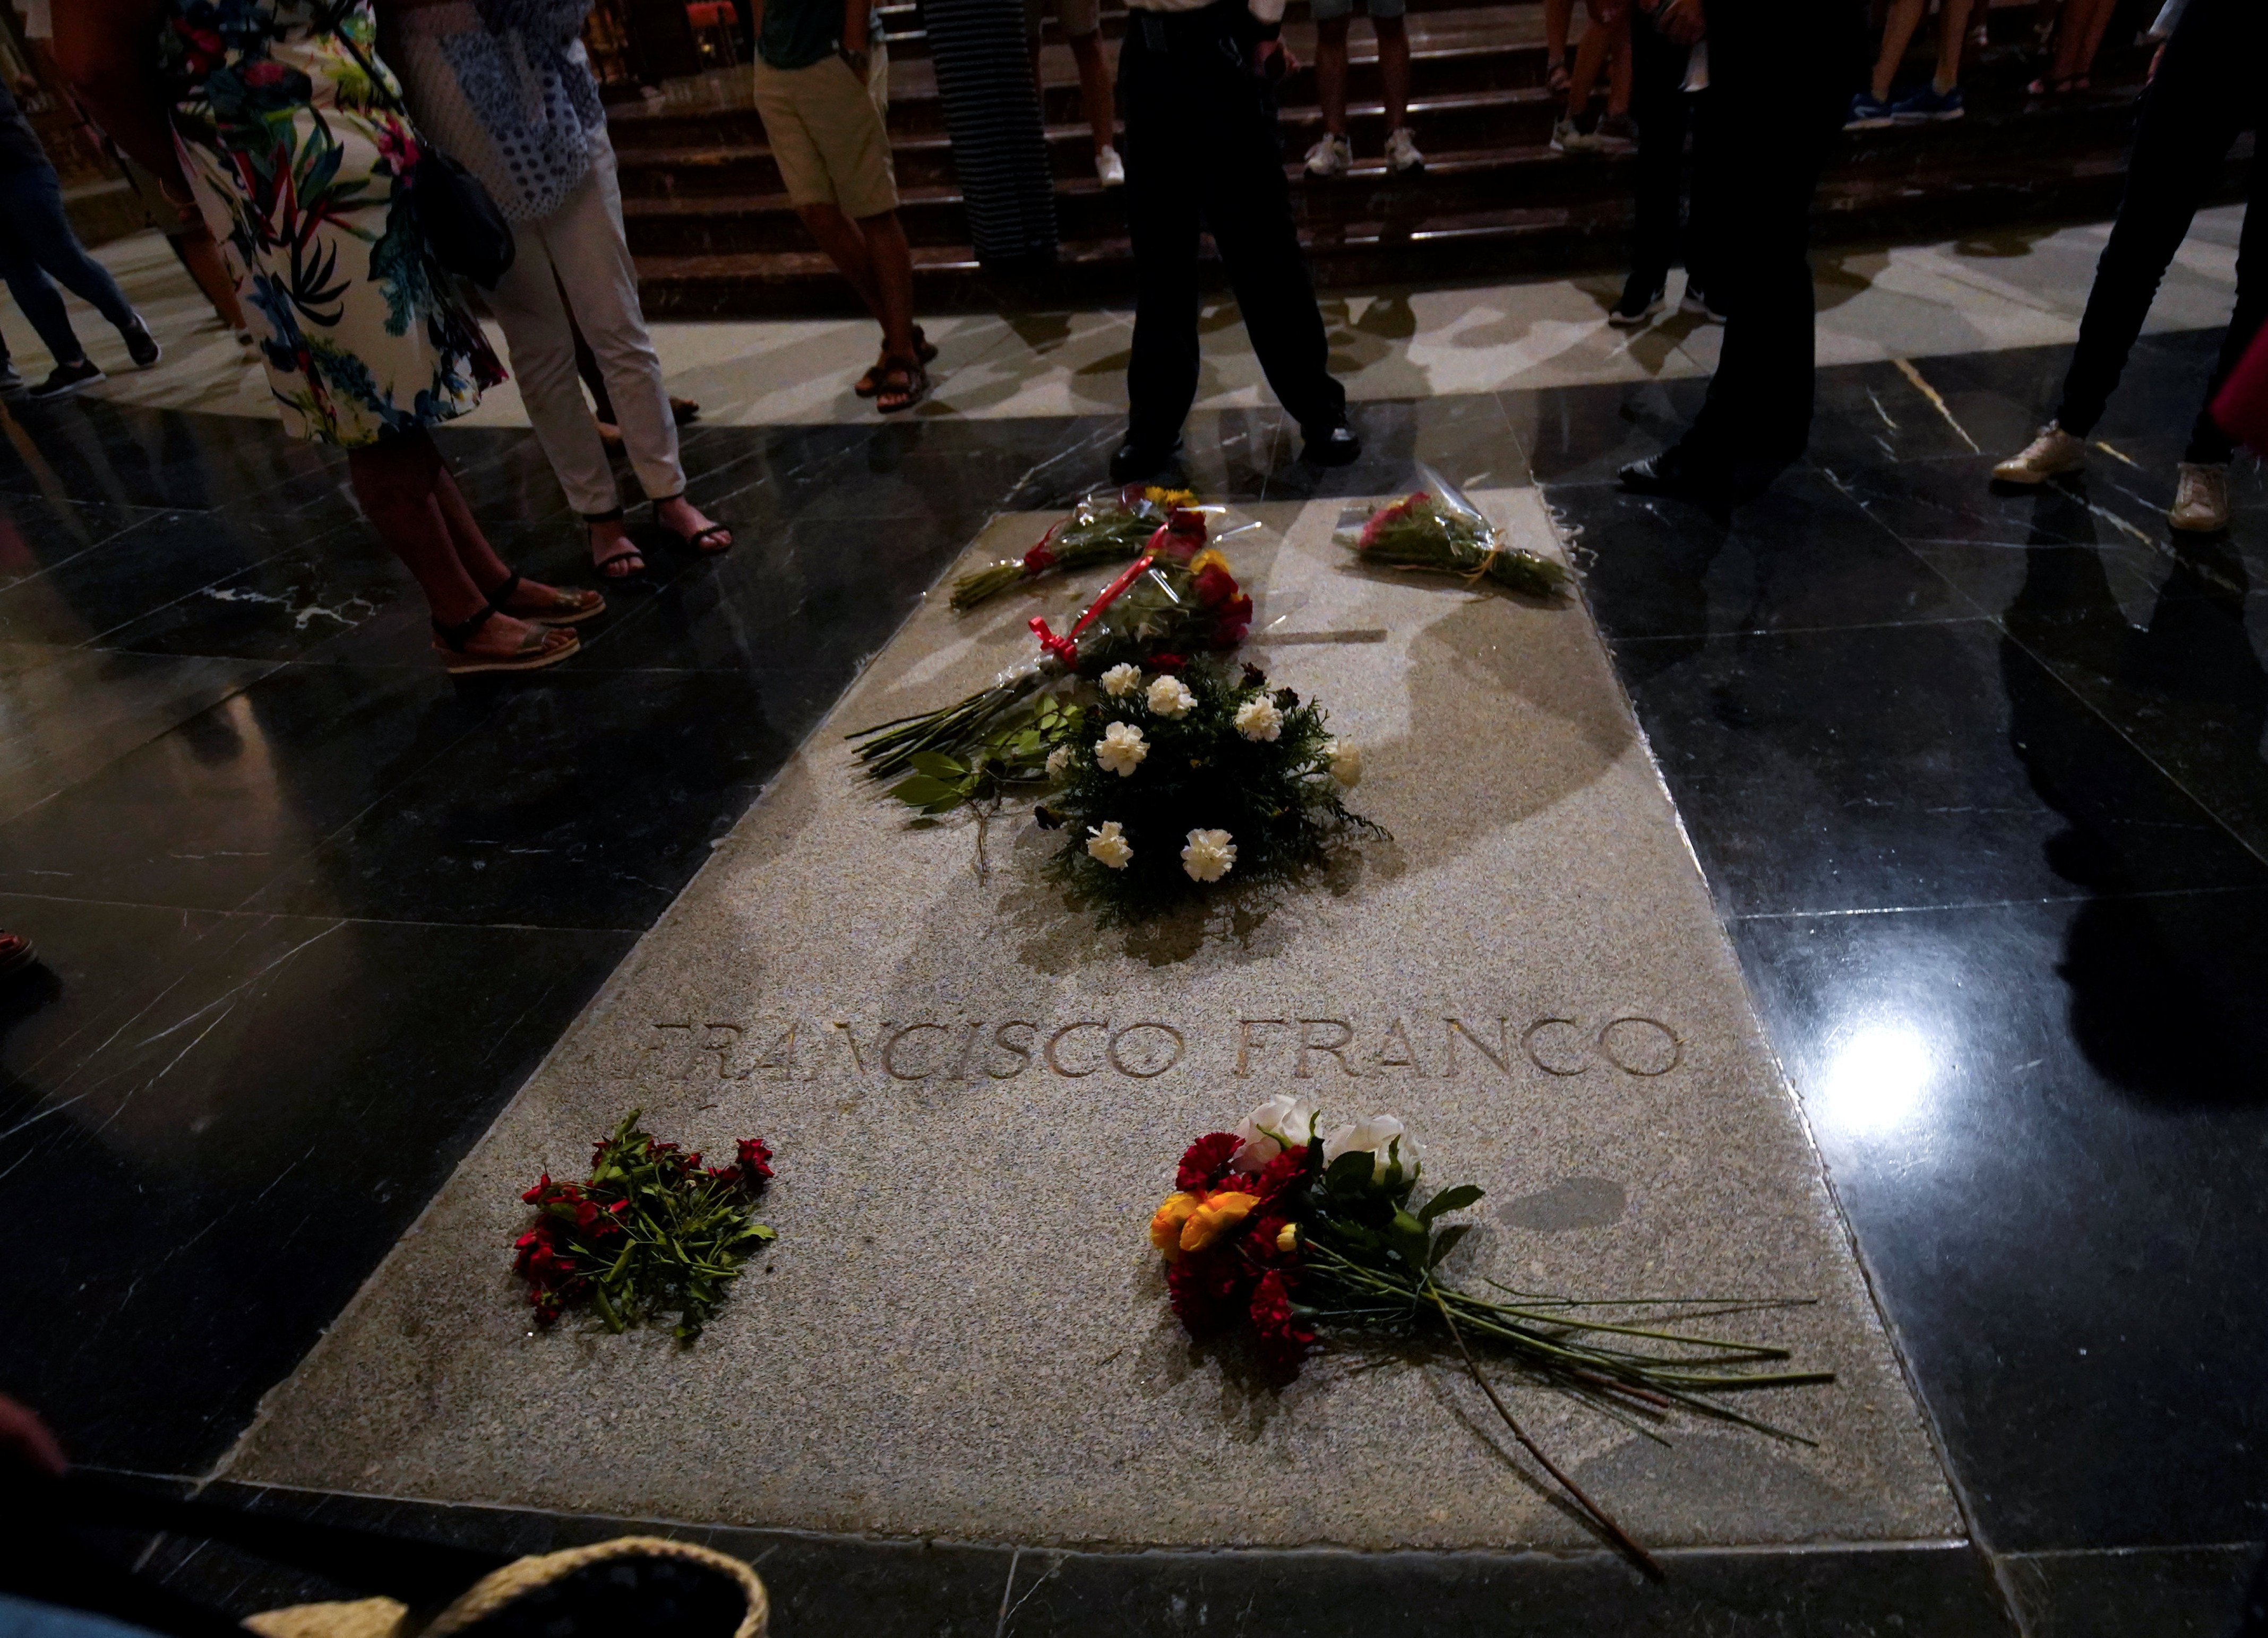 La familia Franco llevará la exhumación al Constitucional "por dignidad"